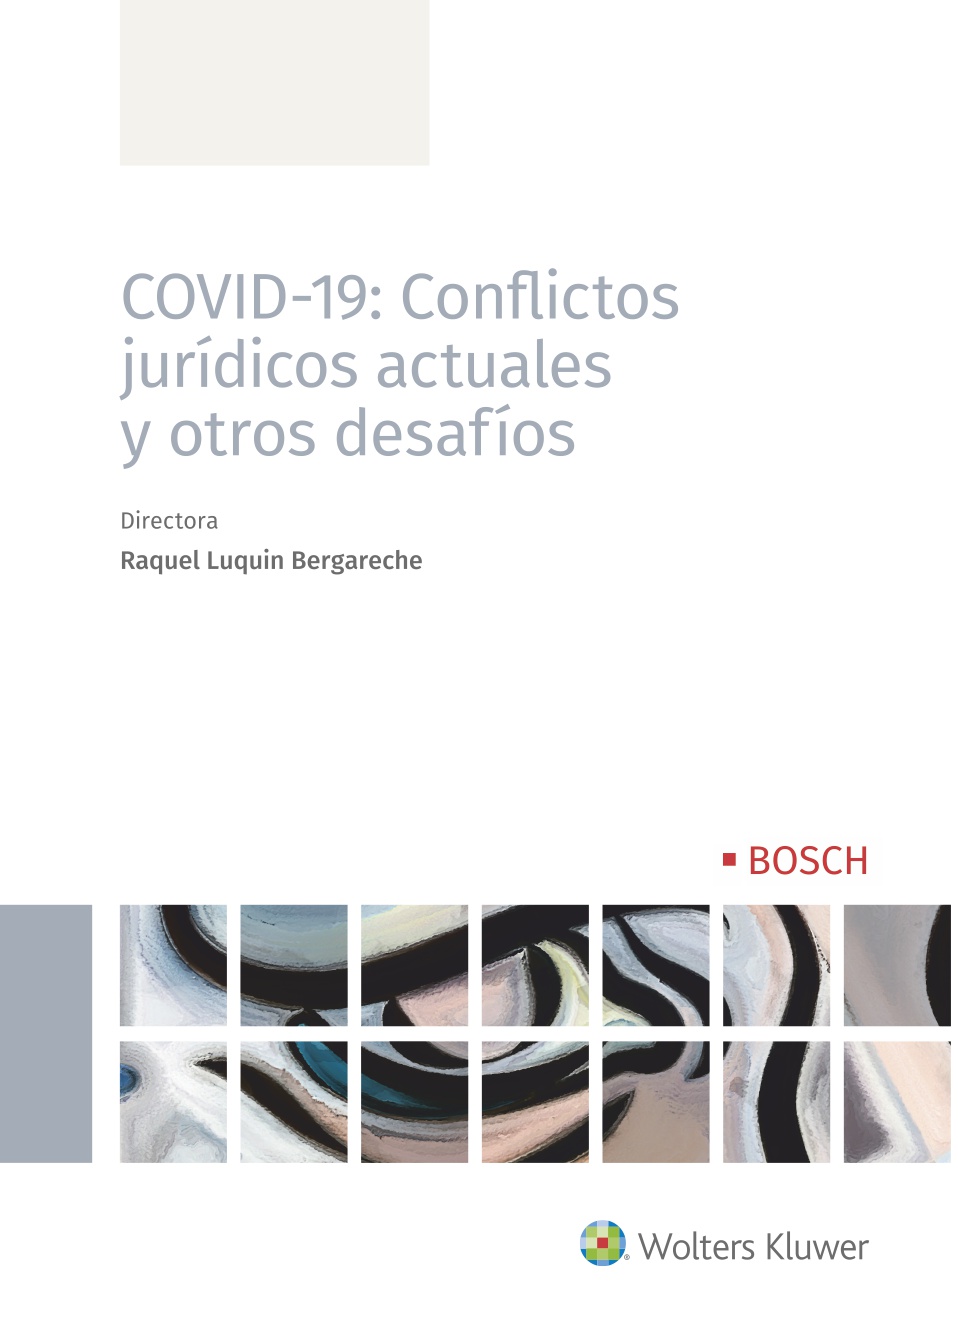 COVID-19 CONFLICTOS JURIDICOS ACTUALES Y OTROS DESAFIOS